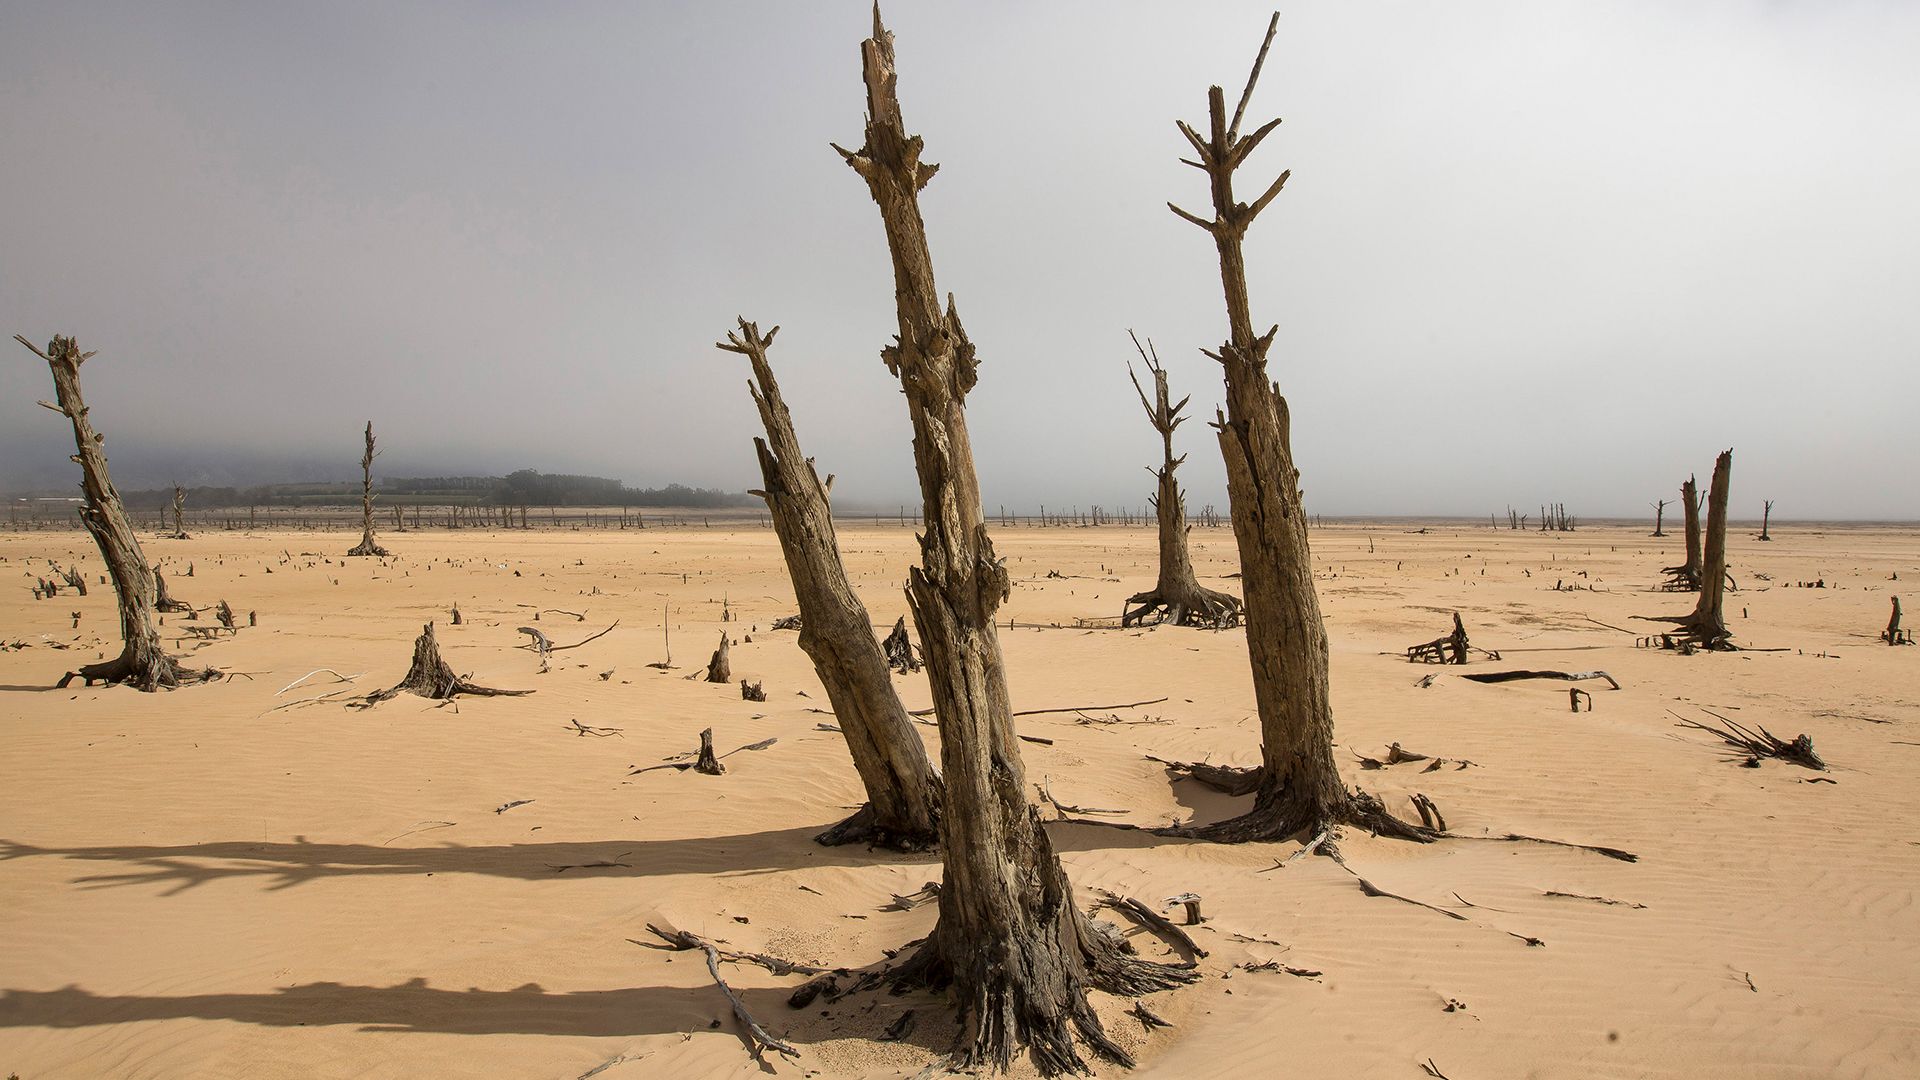 Abgestorbene Bäume an dem in weiten Teilen trockenen Speichersee Theewaterskloof in Südafrika | dpa